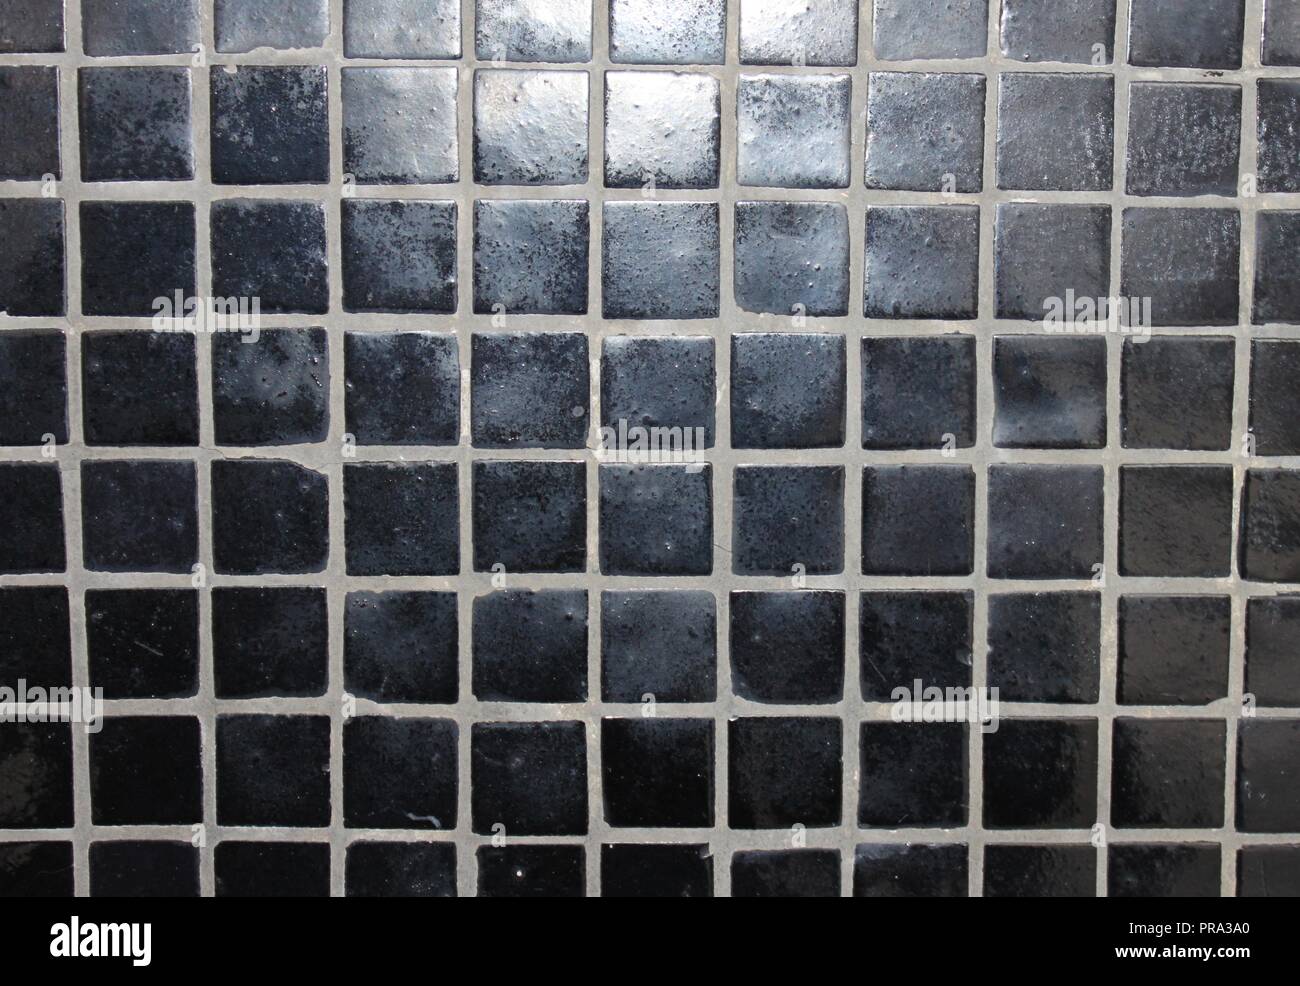 Schwarz Mosaik Fliesen an der Wand Stockfotografie - Alamy